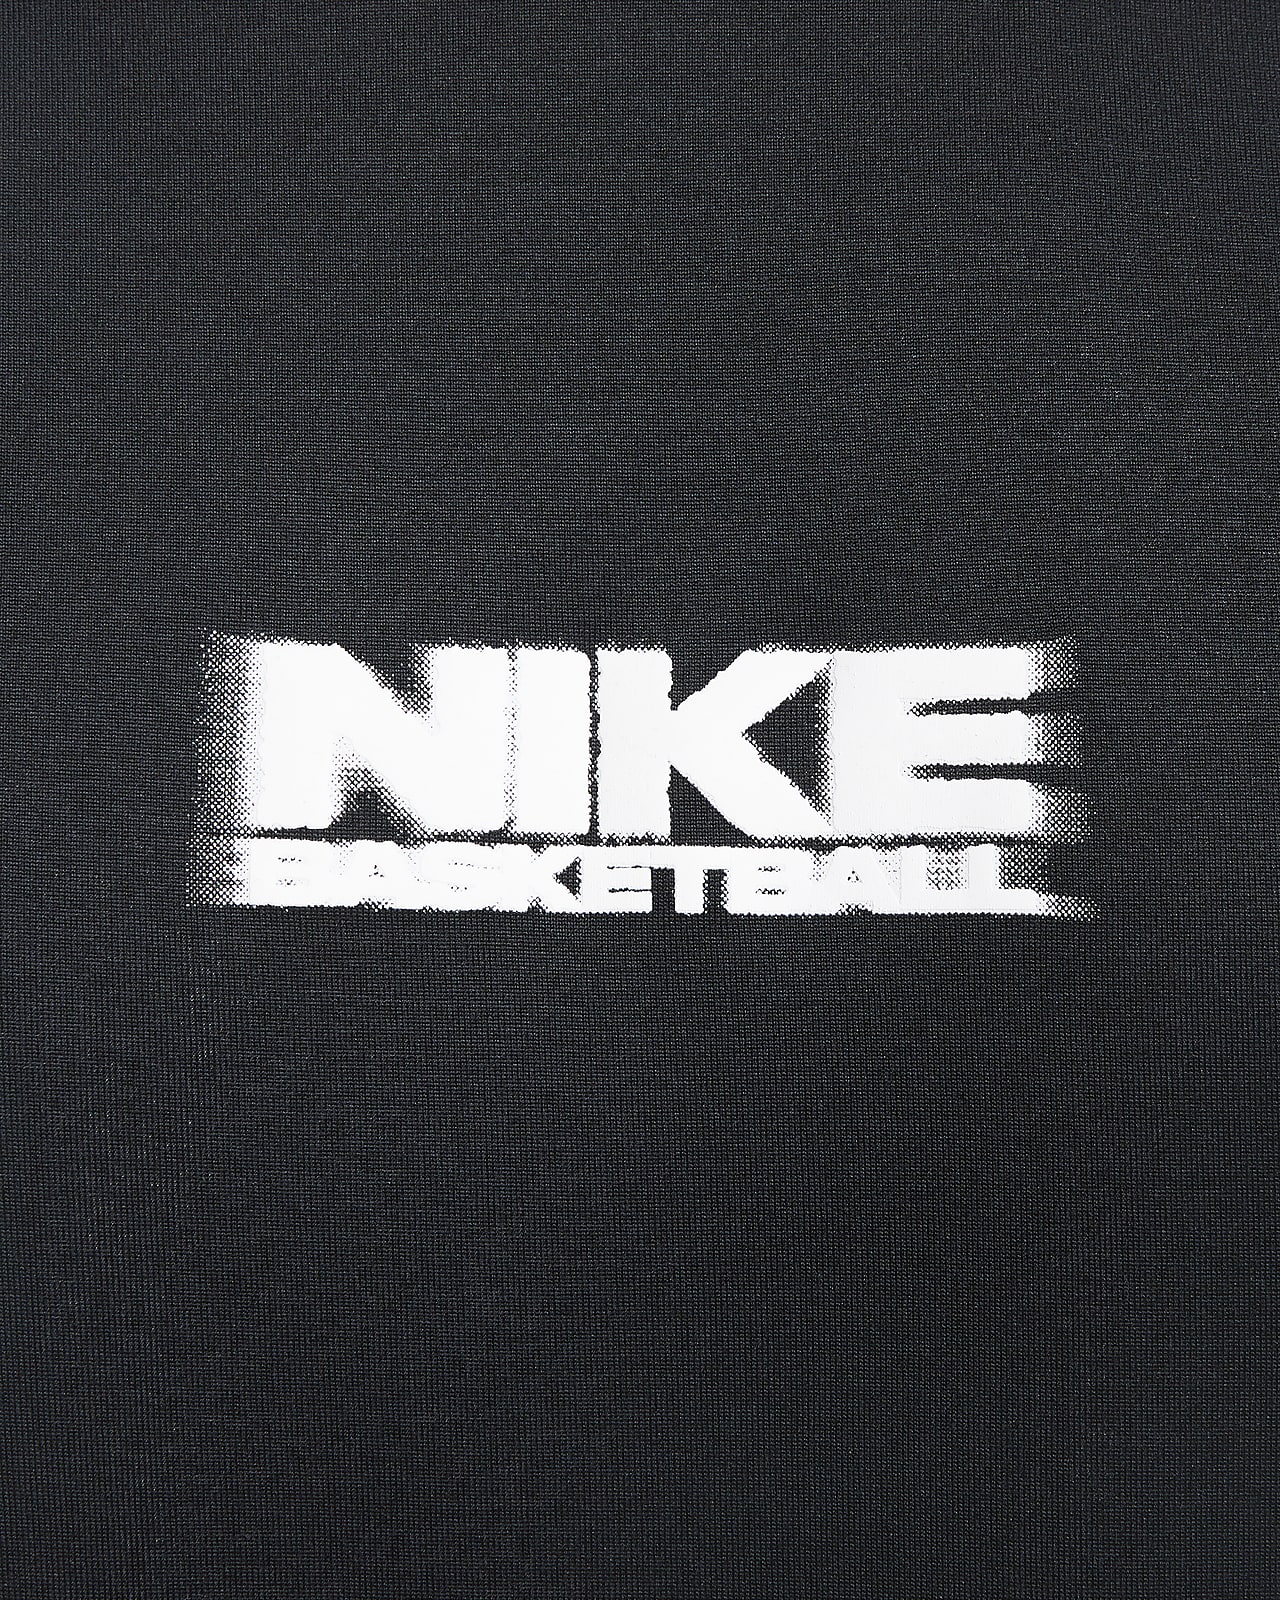 Nike, Basketball Jersey Label